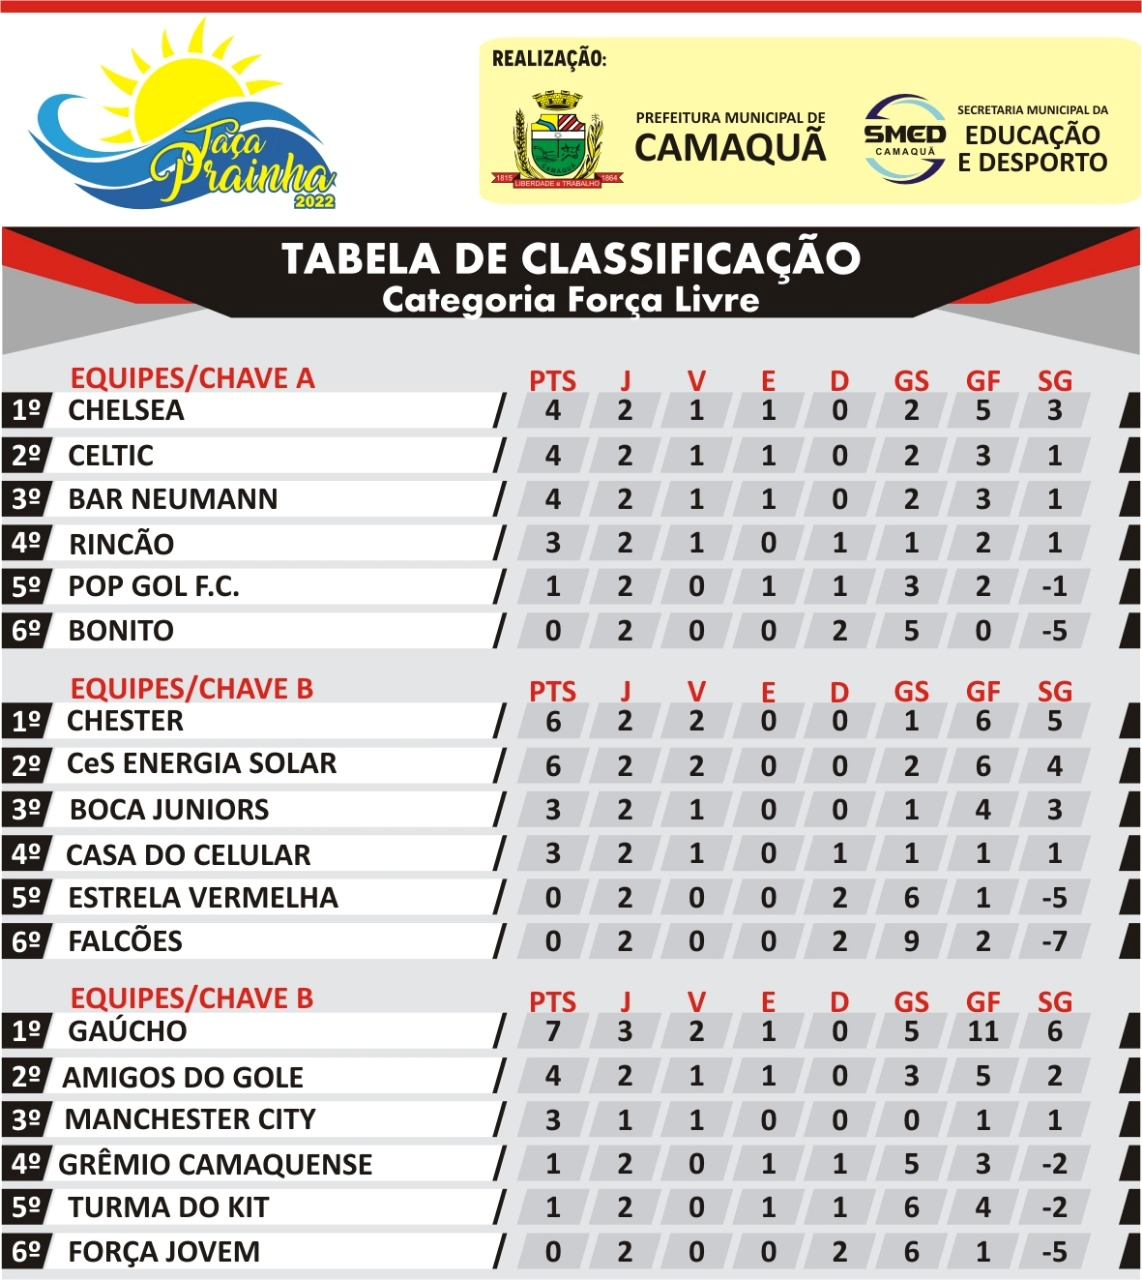 Foto: Classificação Taça Prainha 2022